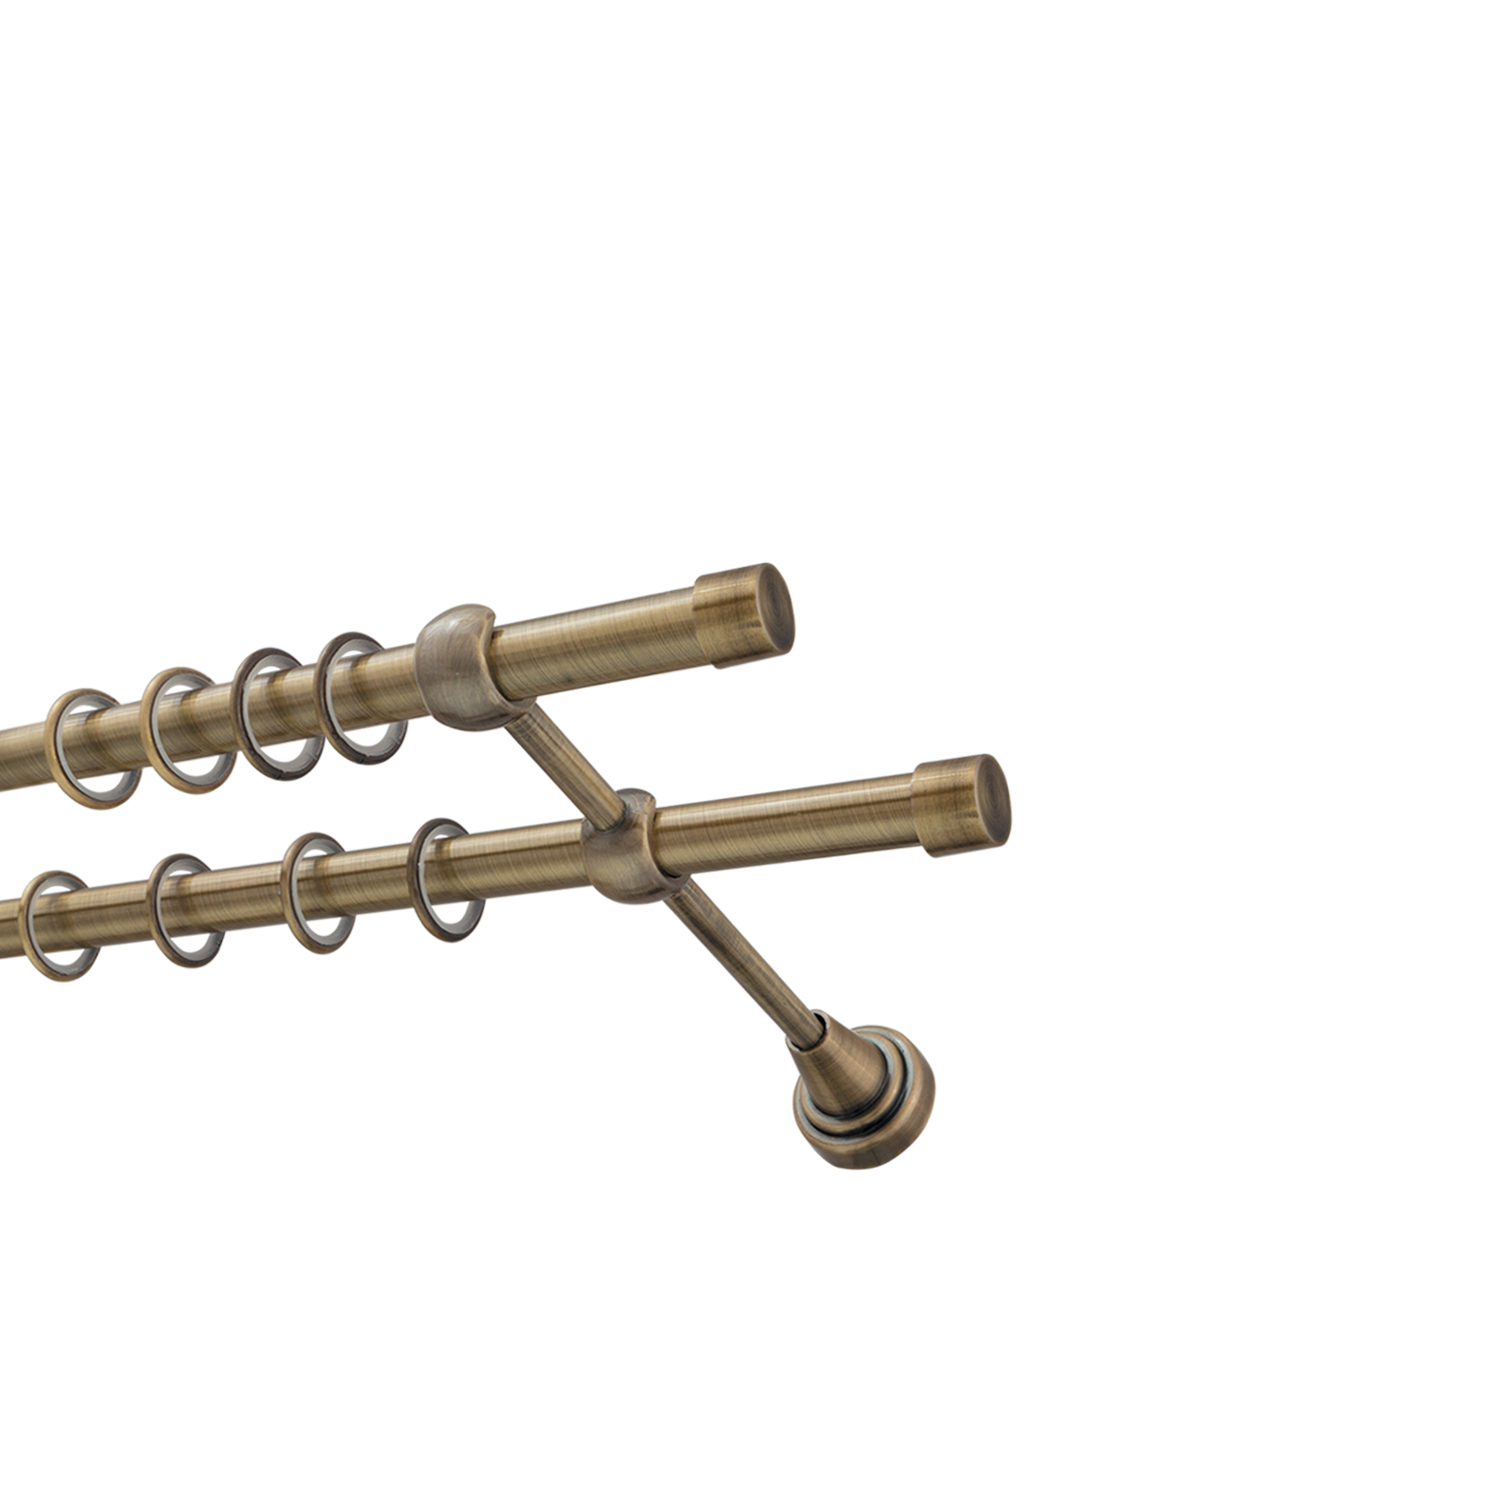 Металлический карниз для штор Заглушка, двухрядный 16/16 мм, бронза, гладкая штанга, длина 140 см - фото Wikidecor.ru